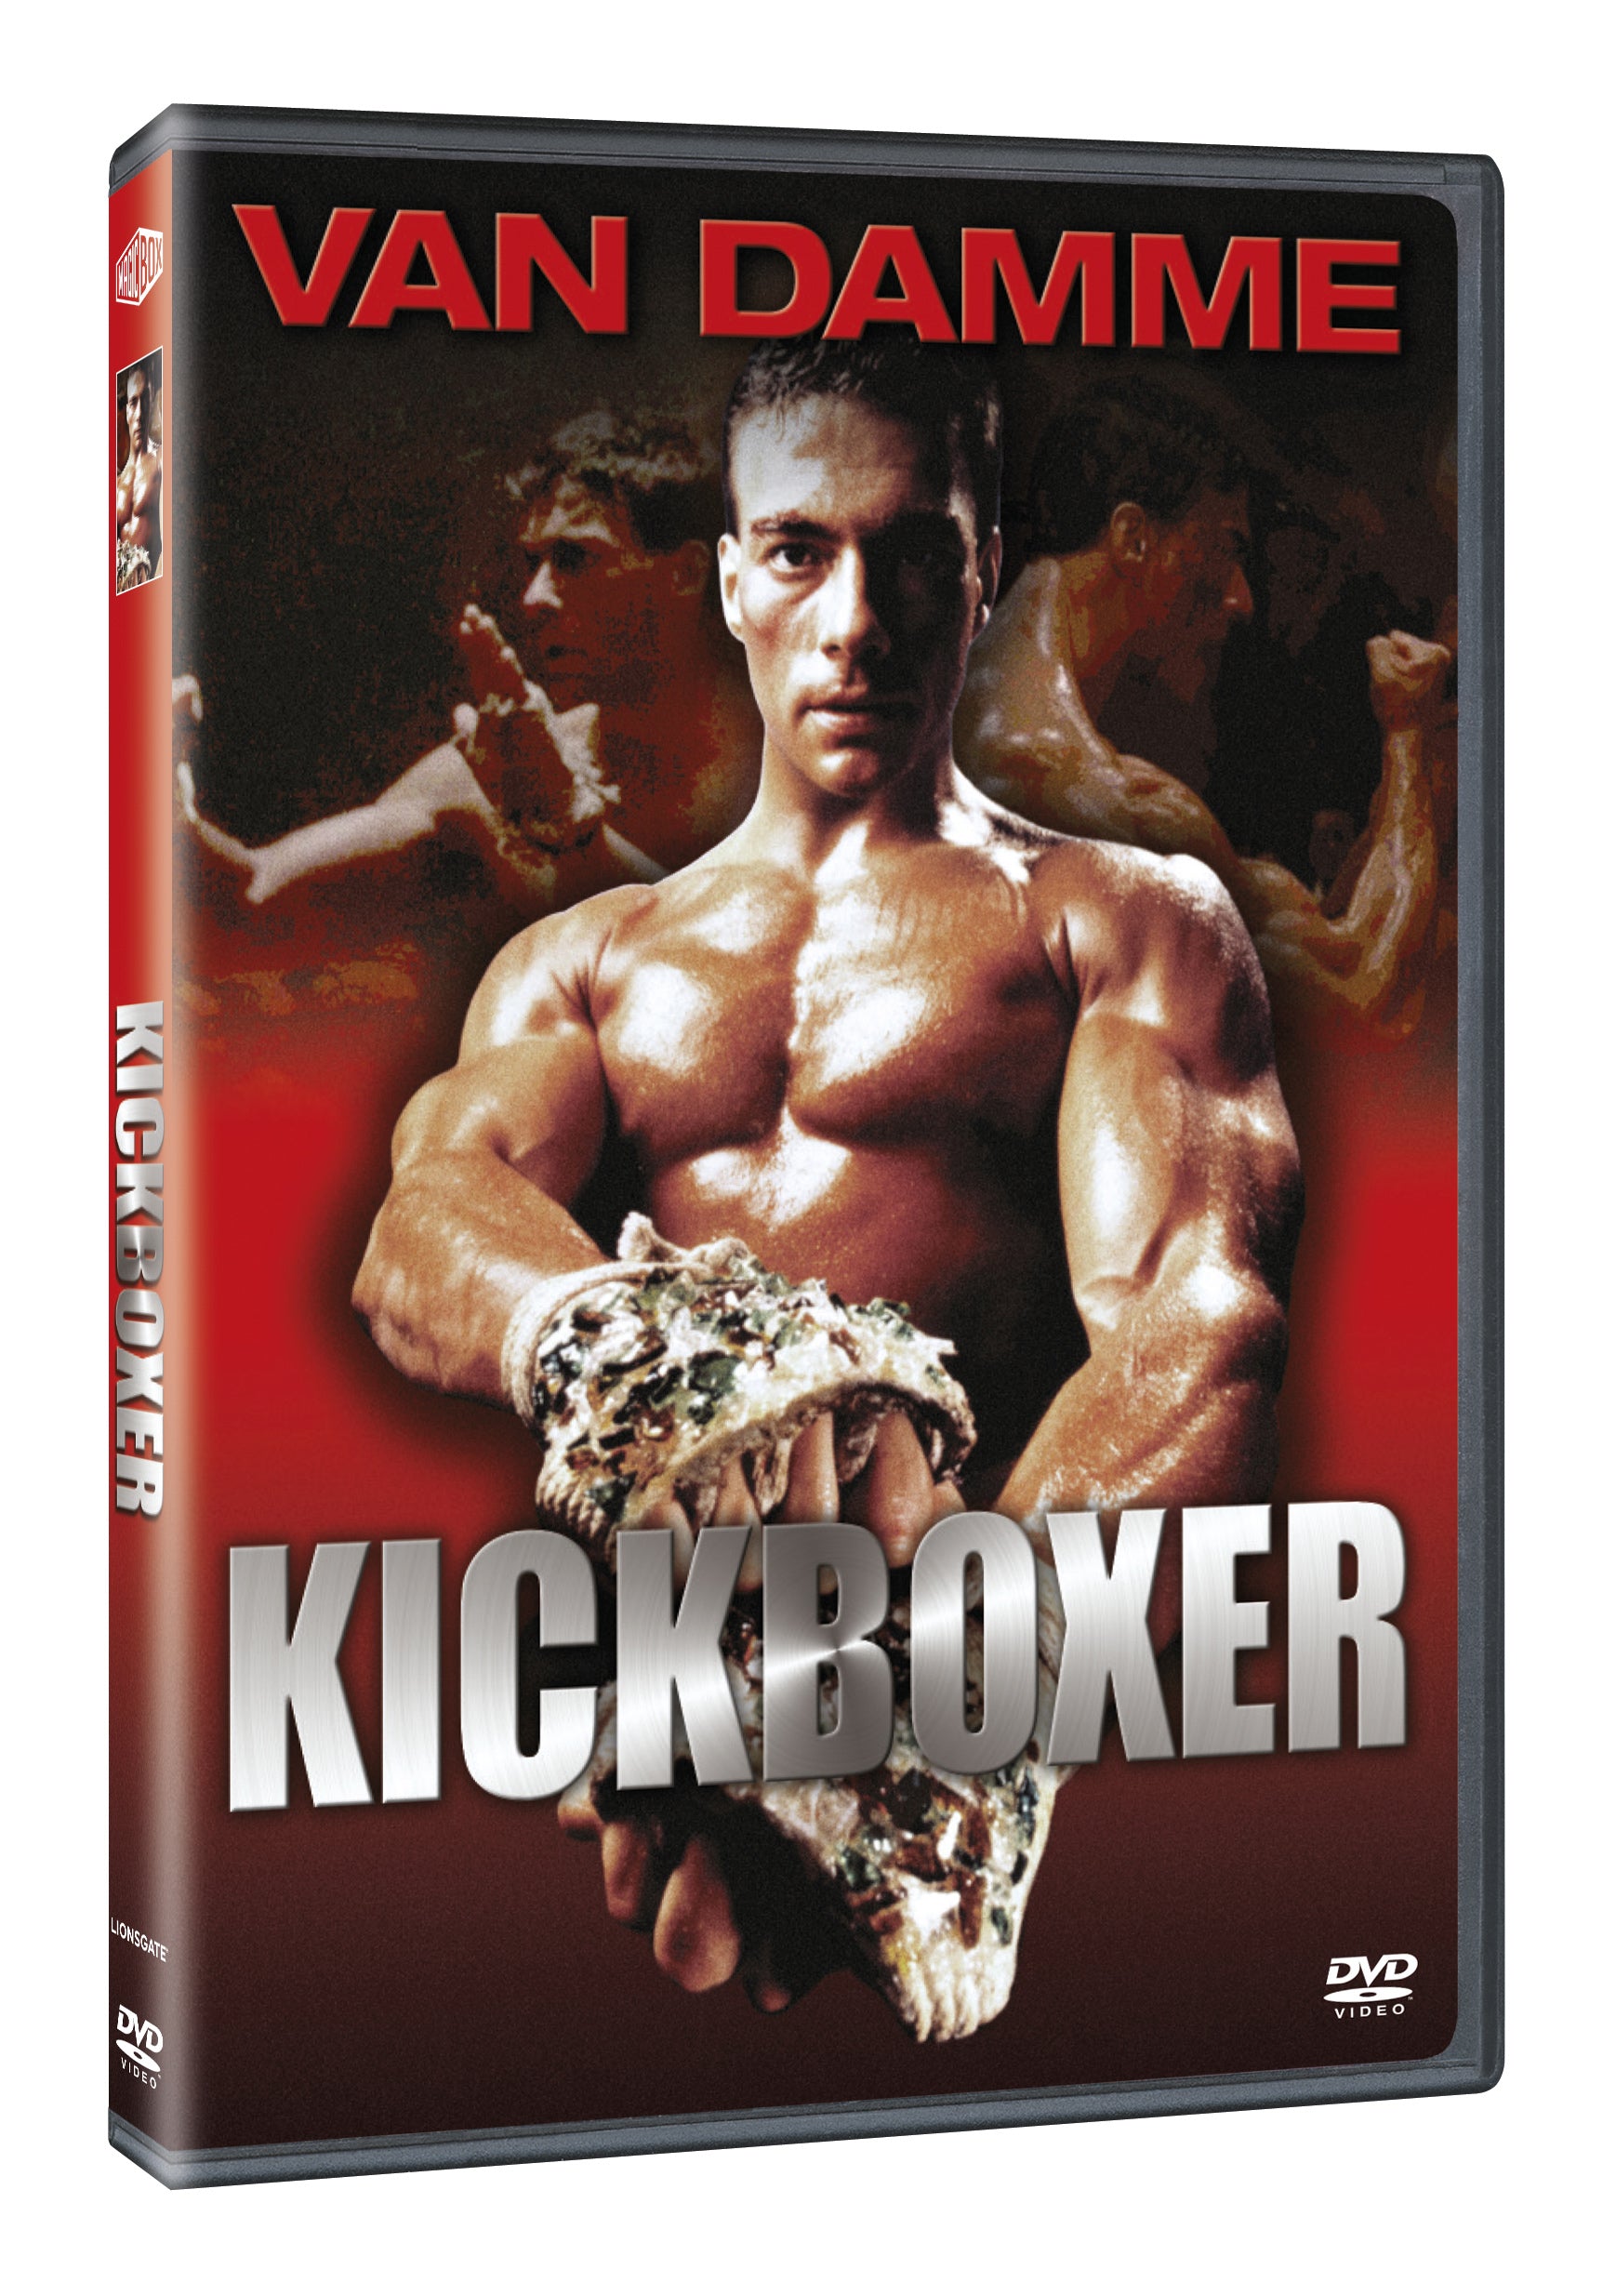 Kickboxer DVD / Kickboxer